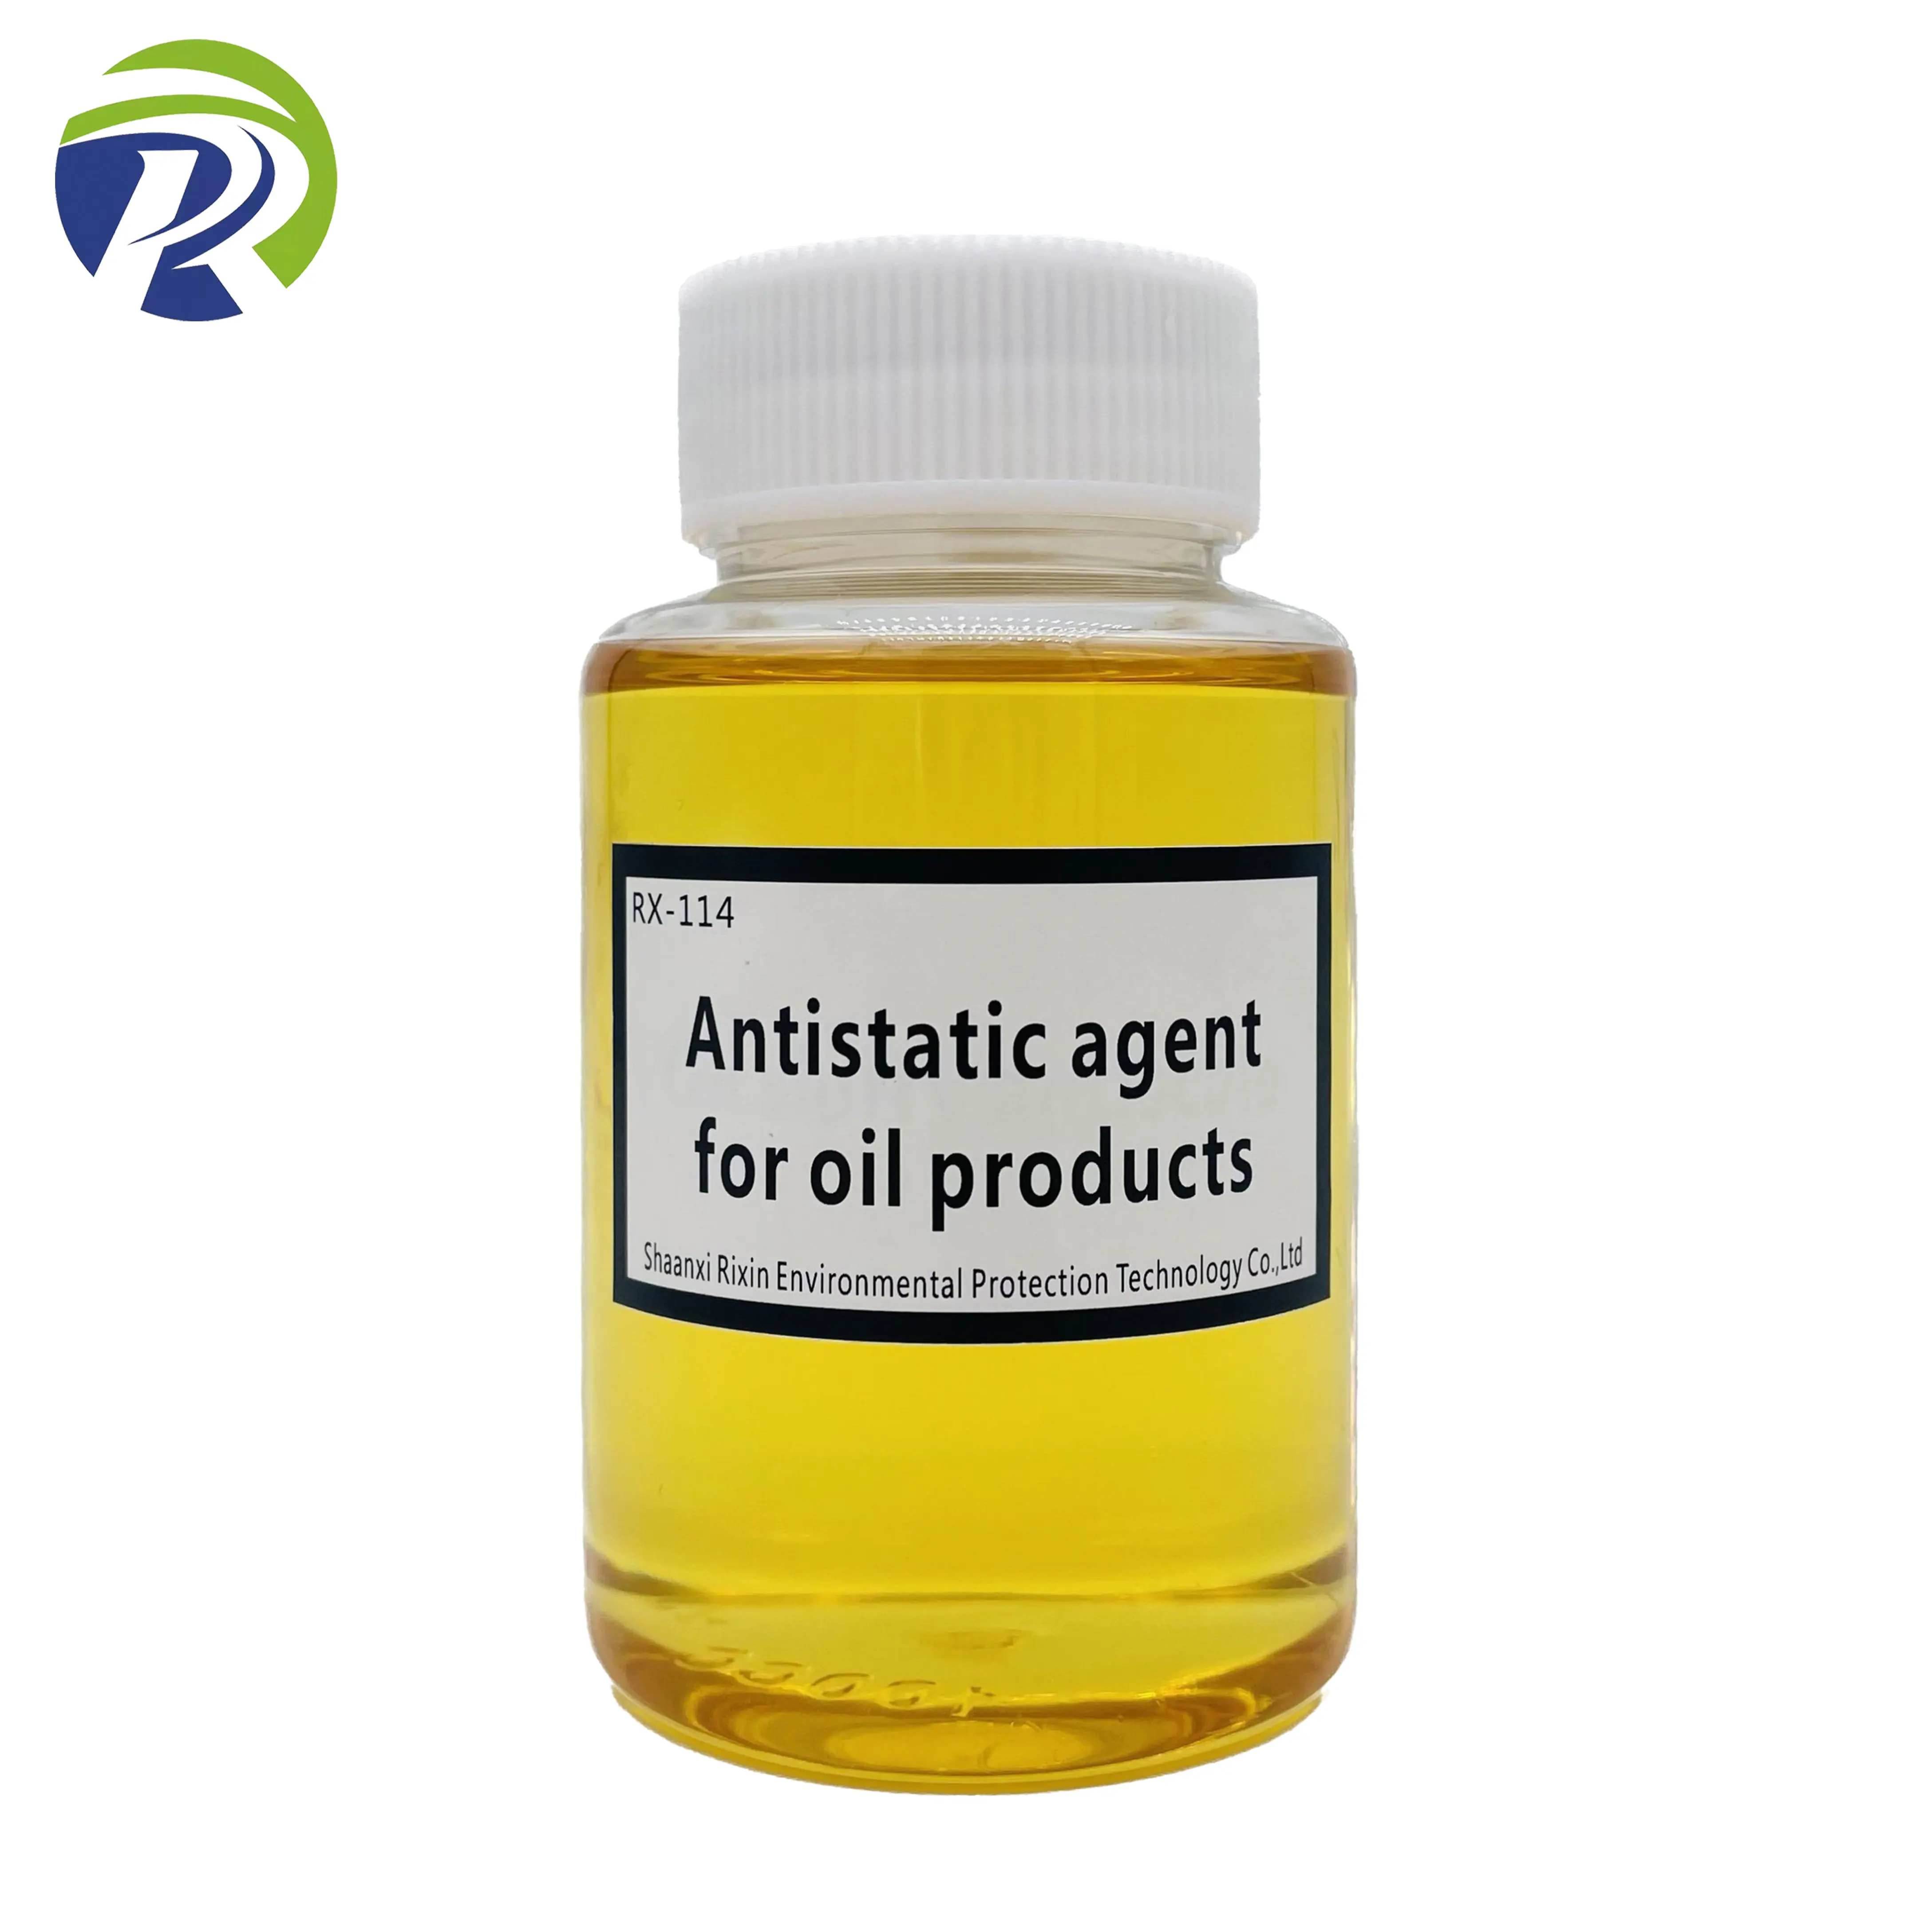 Agenti antistatici per oli/inibitore statico, proteggono l'attrezzatura dai danni elettrostatici